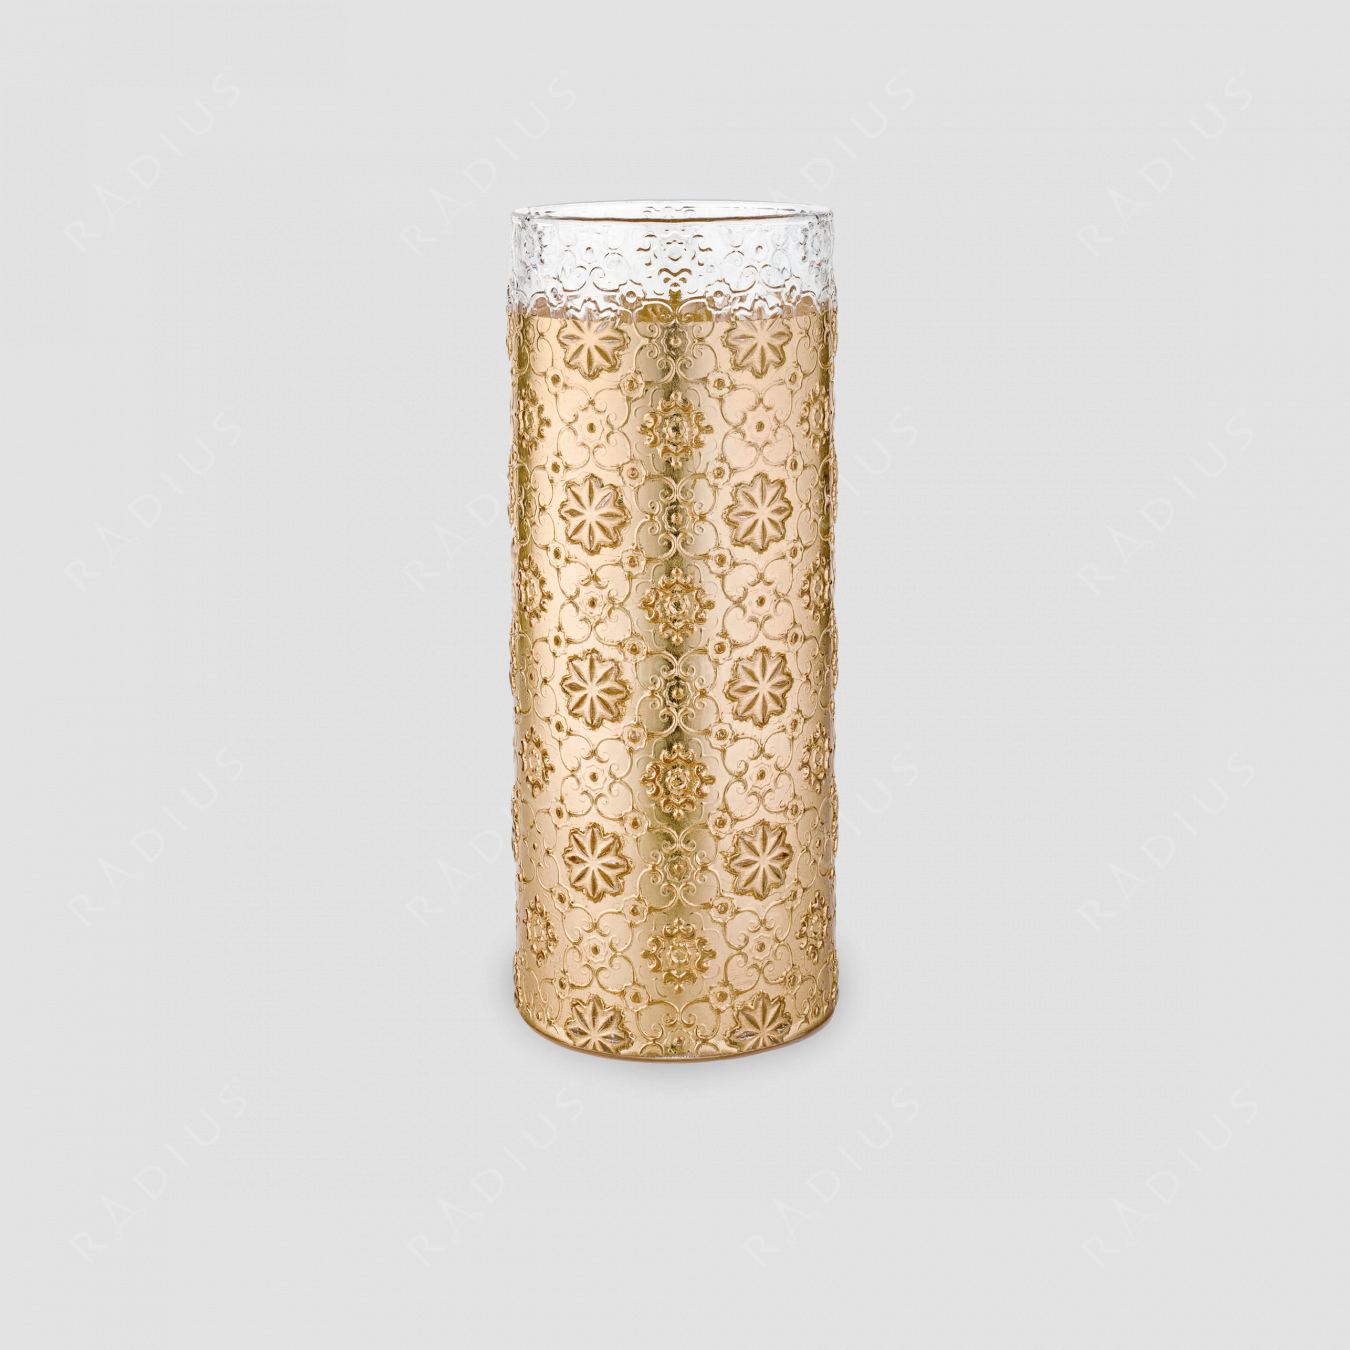 Стеклянная ваза для цветов, диаметр: 12,5 см, высота: 32 см, материал: стекло, цвет: золото, серия Arabesque, IVV (Italy), Италия